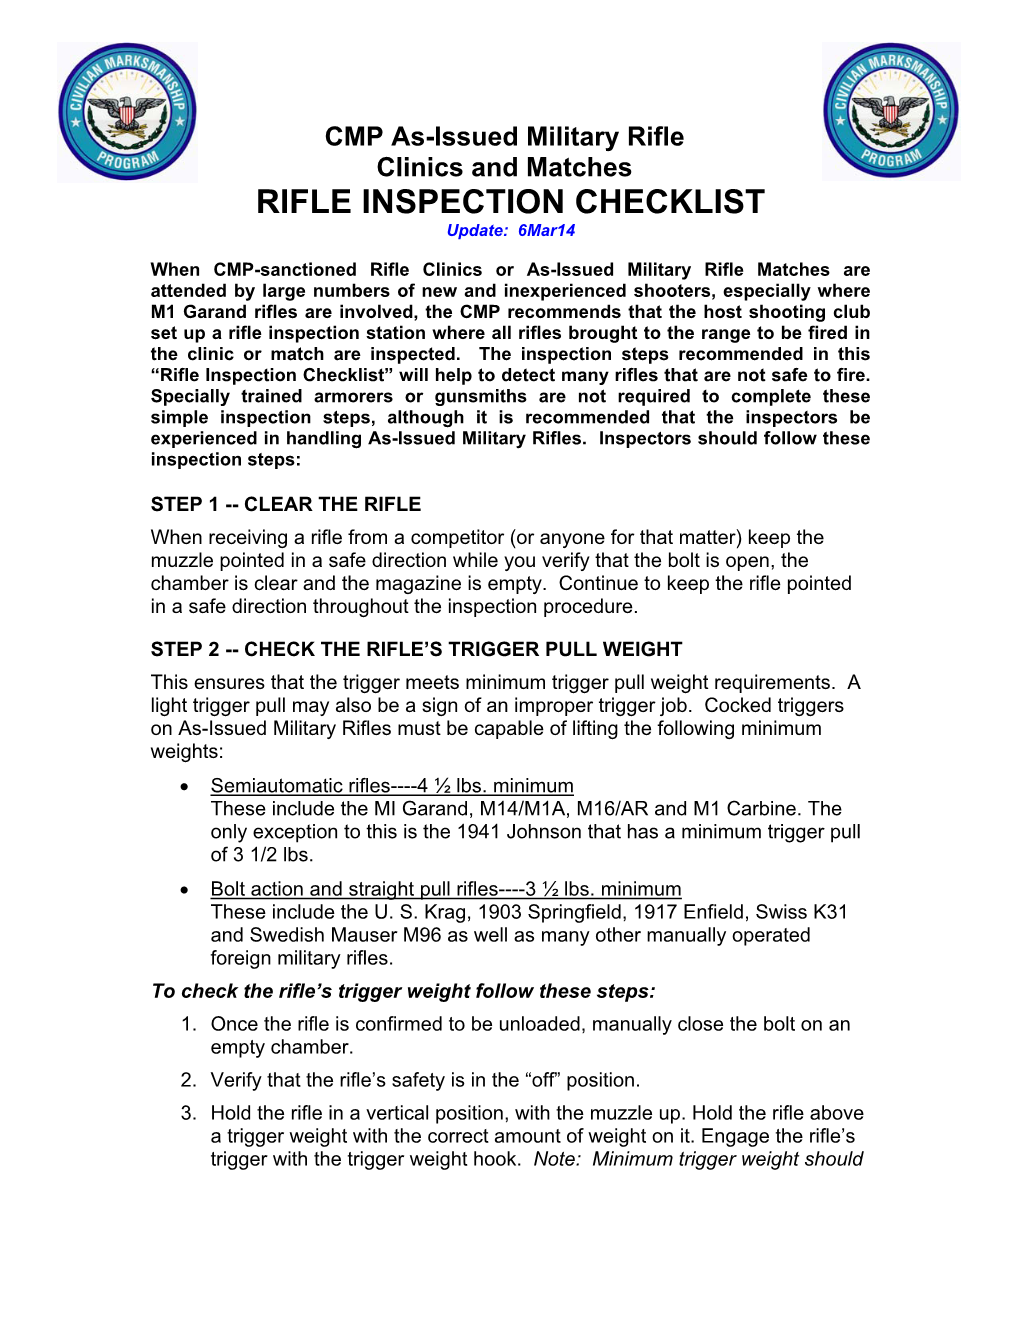 RIFLE INSPECTION CHECKLIST Update: 6Mar14